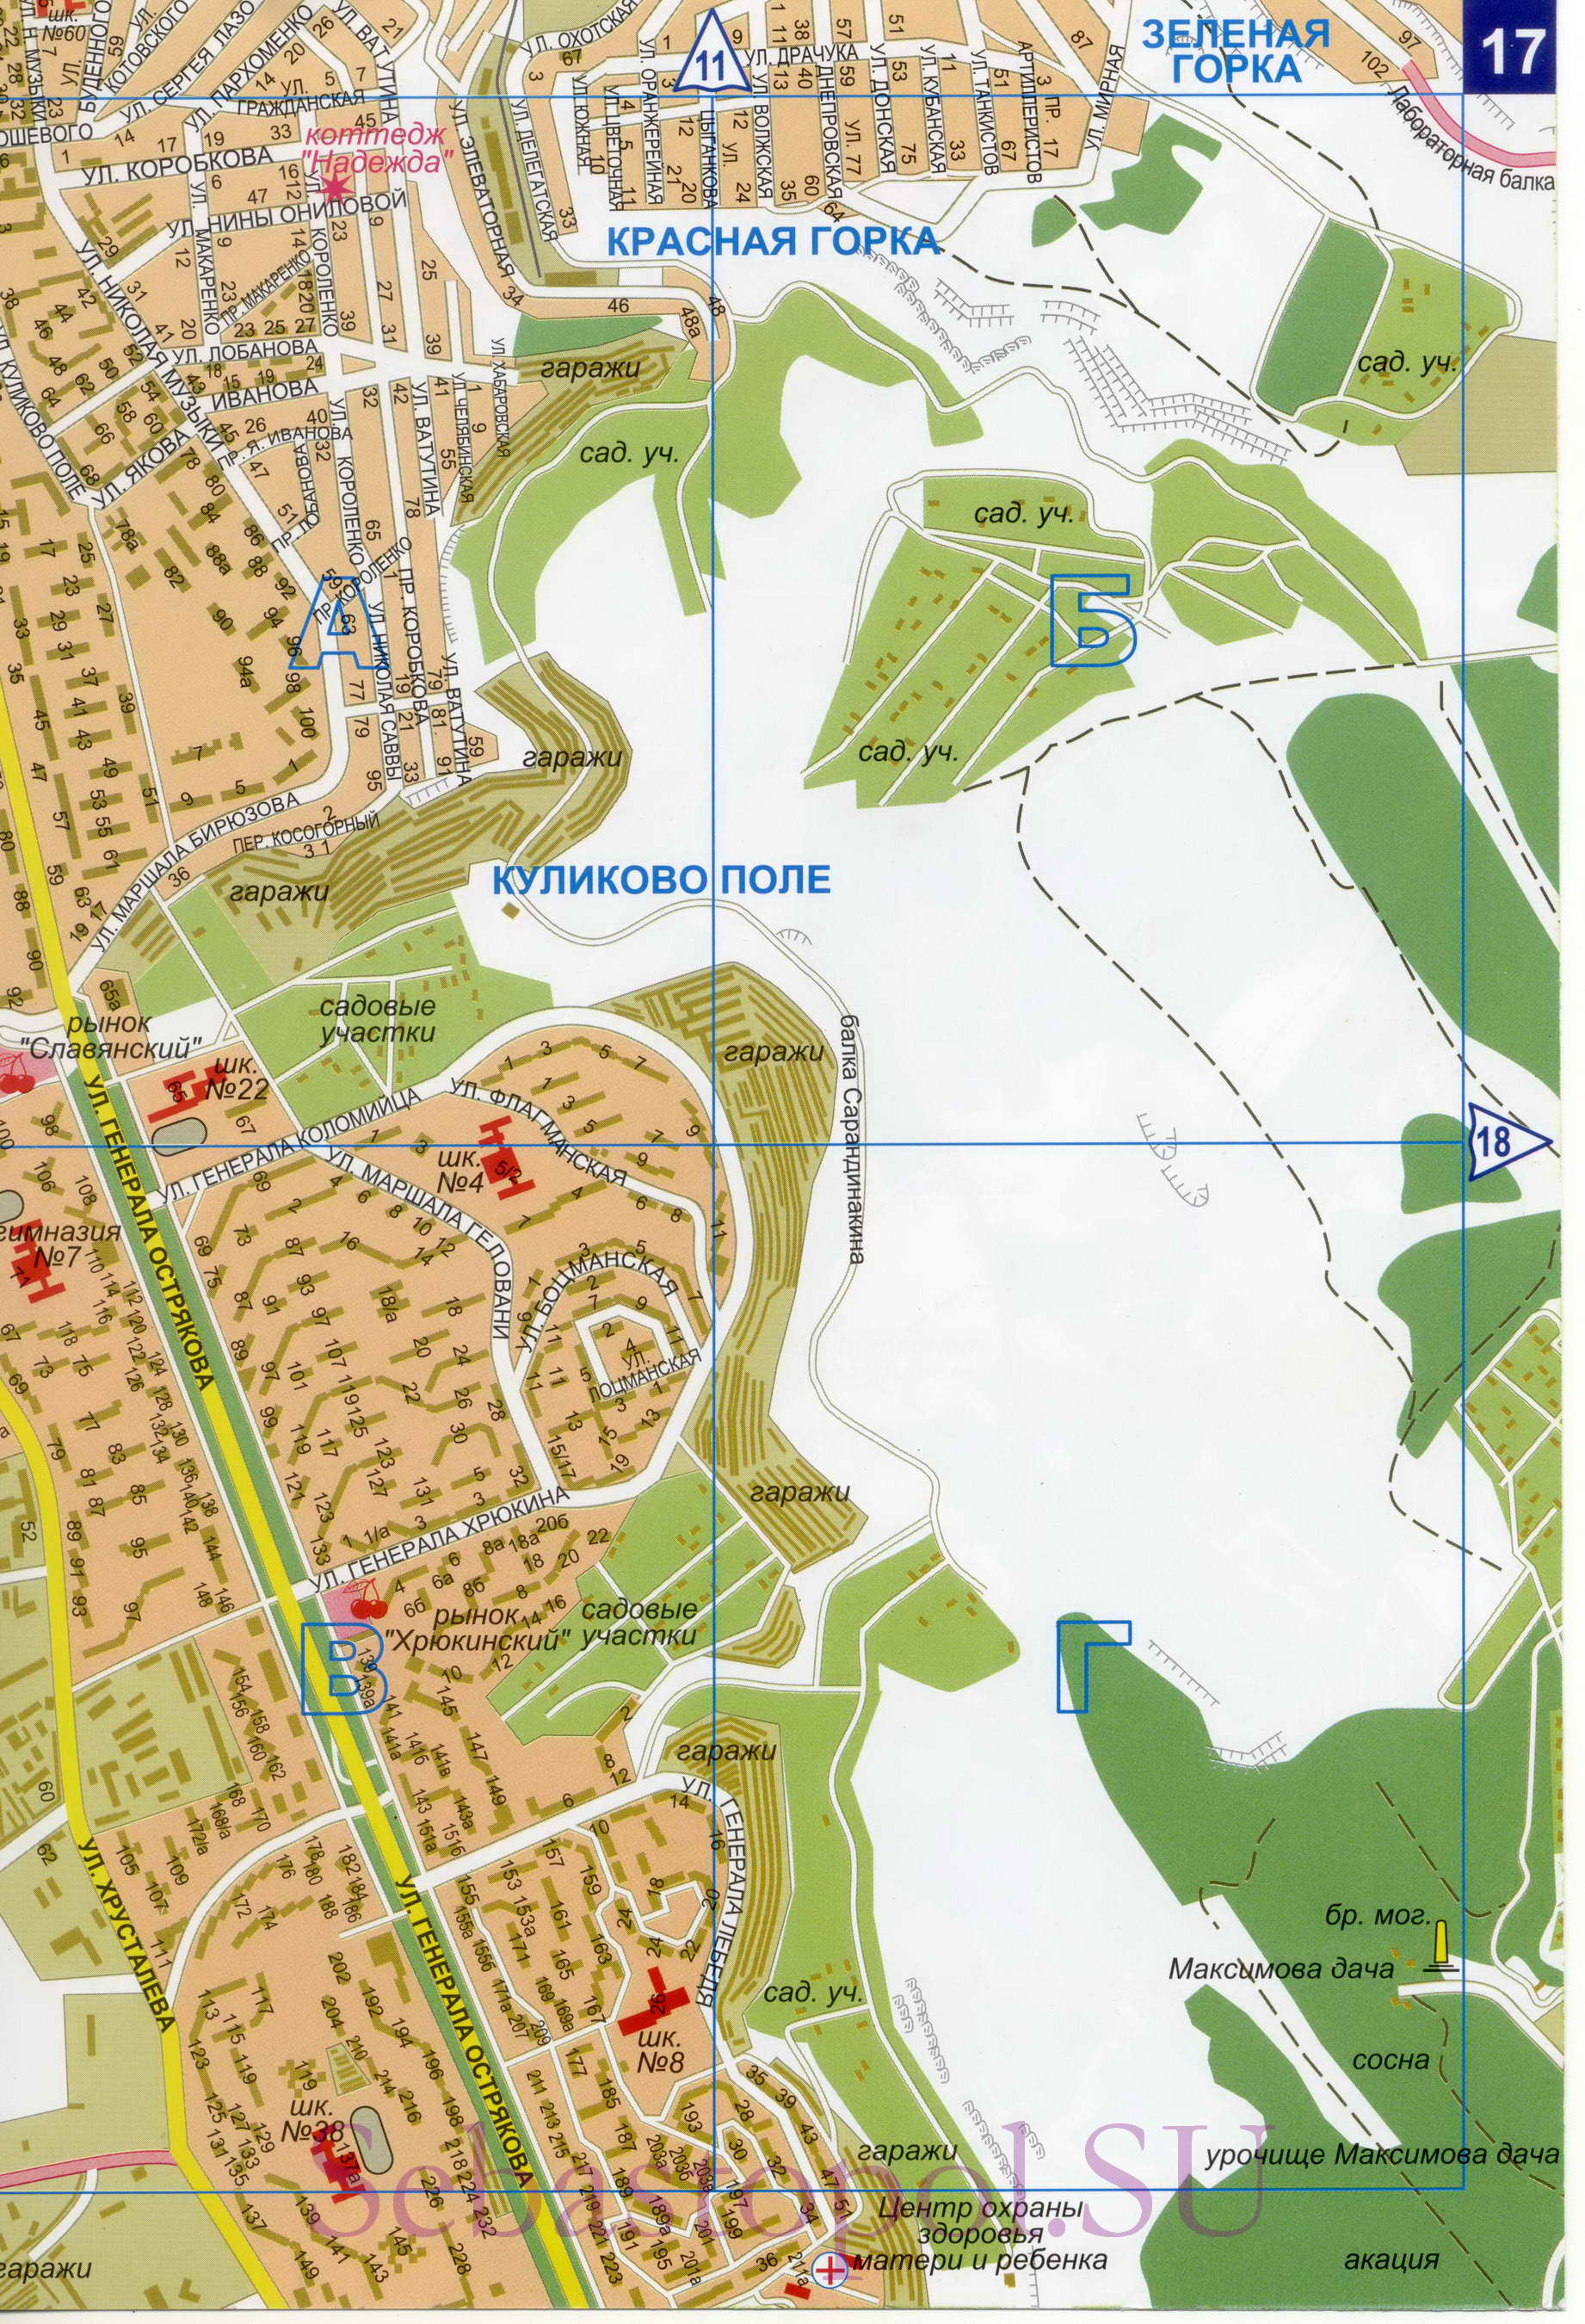 Карта Севастополя. Подробная карта Севастополя с номерами домов. Новая карта Севастополя 2011, D2 - 